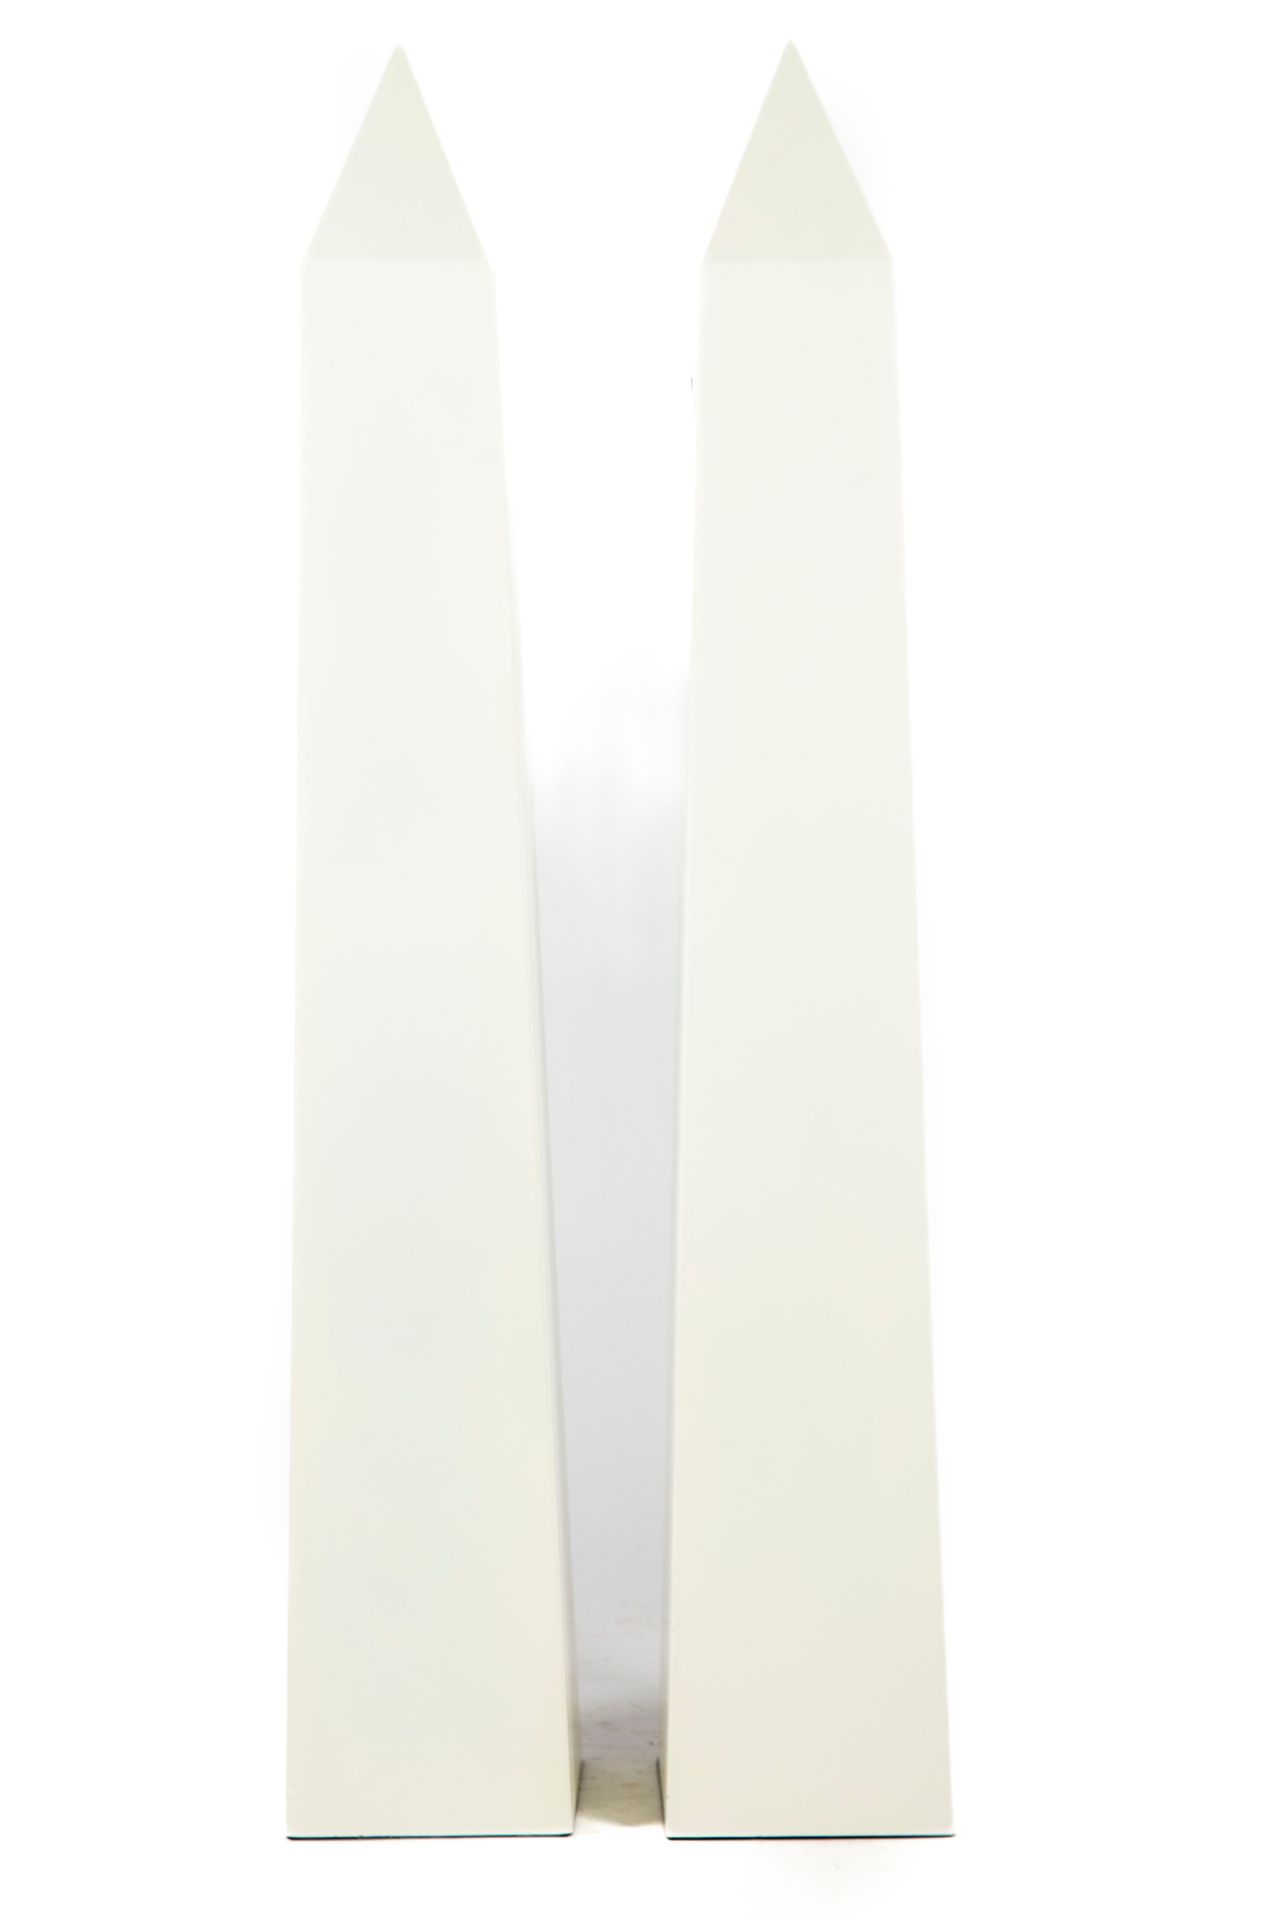 Null Grande paire d'obélisques en résine blanche
H. : 95 cm